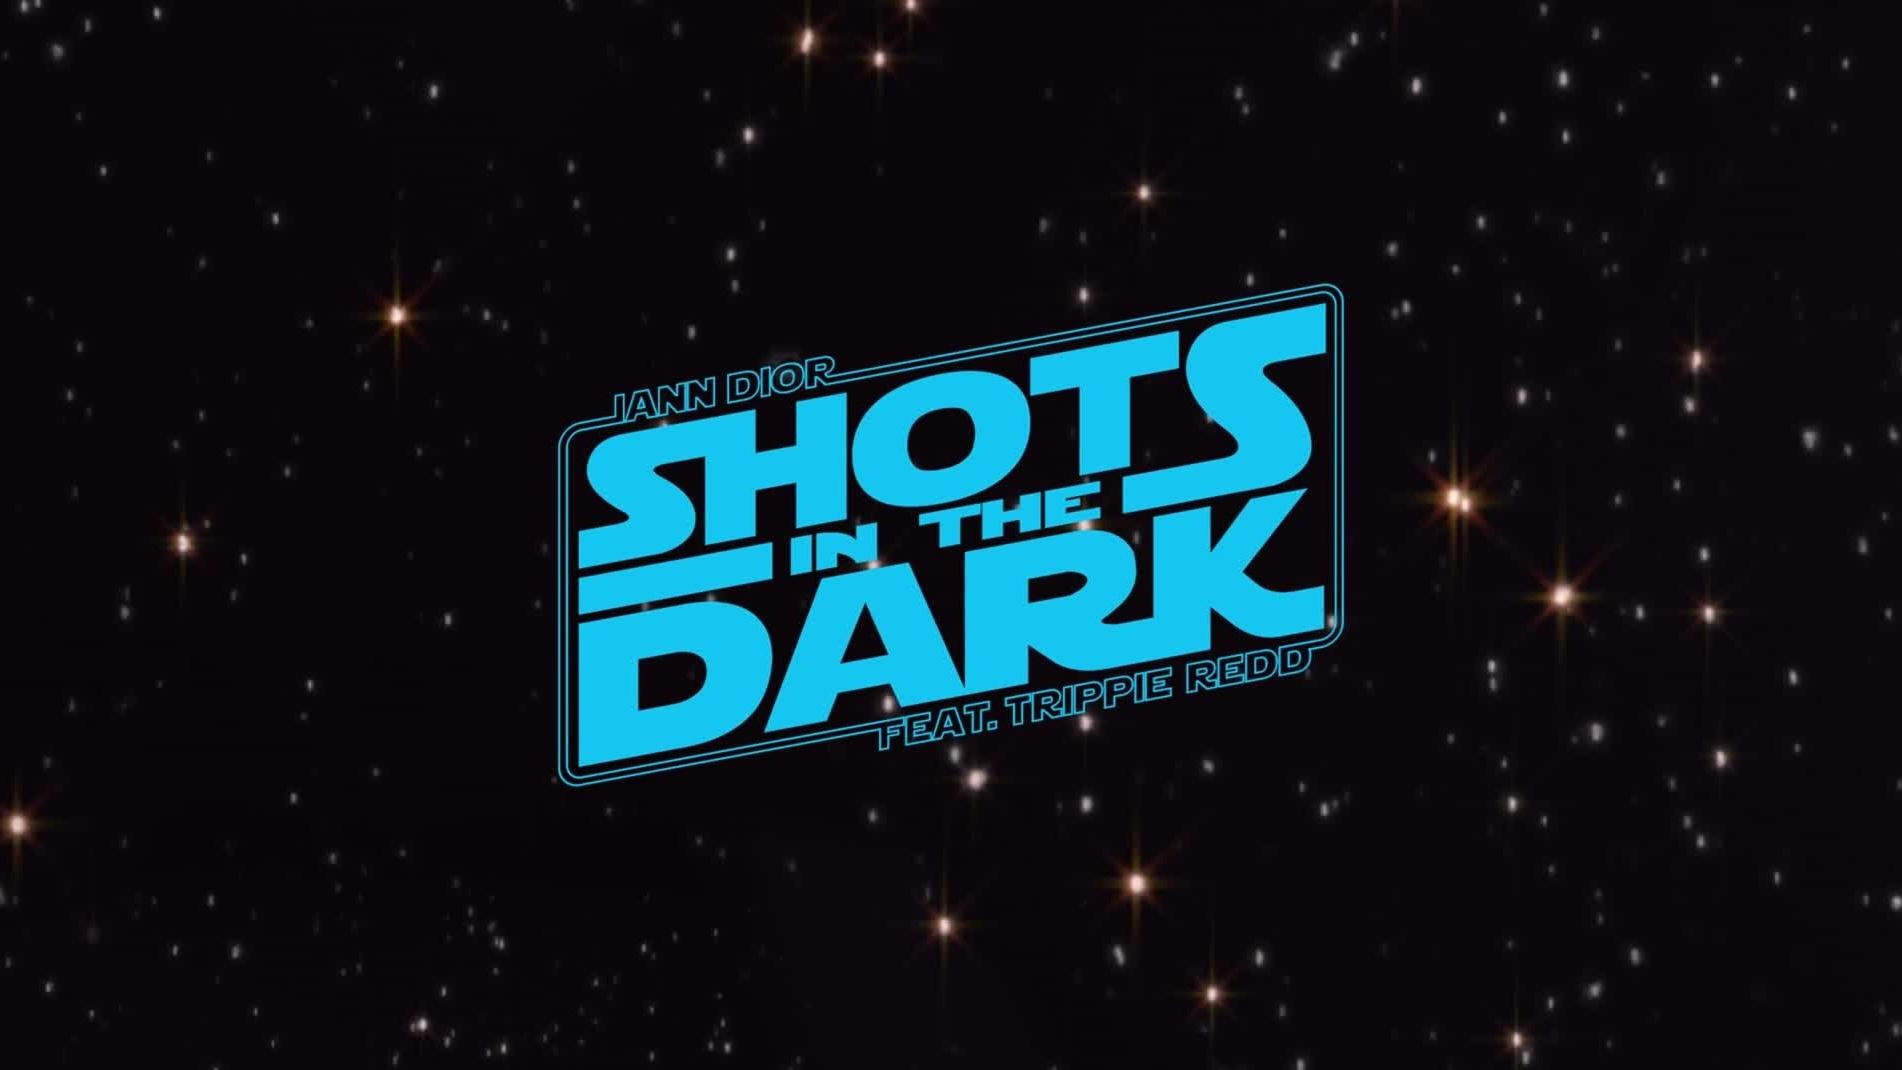 iann dior - shots in the dark